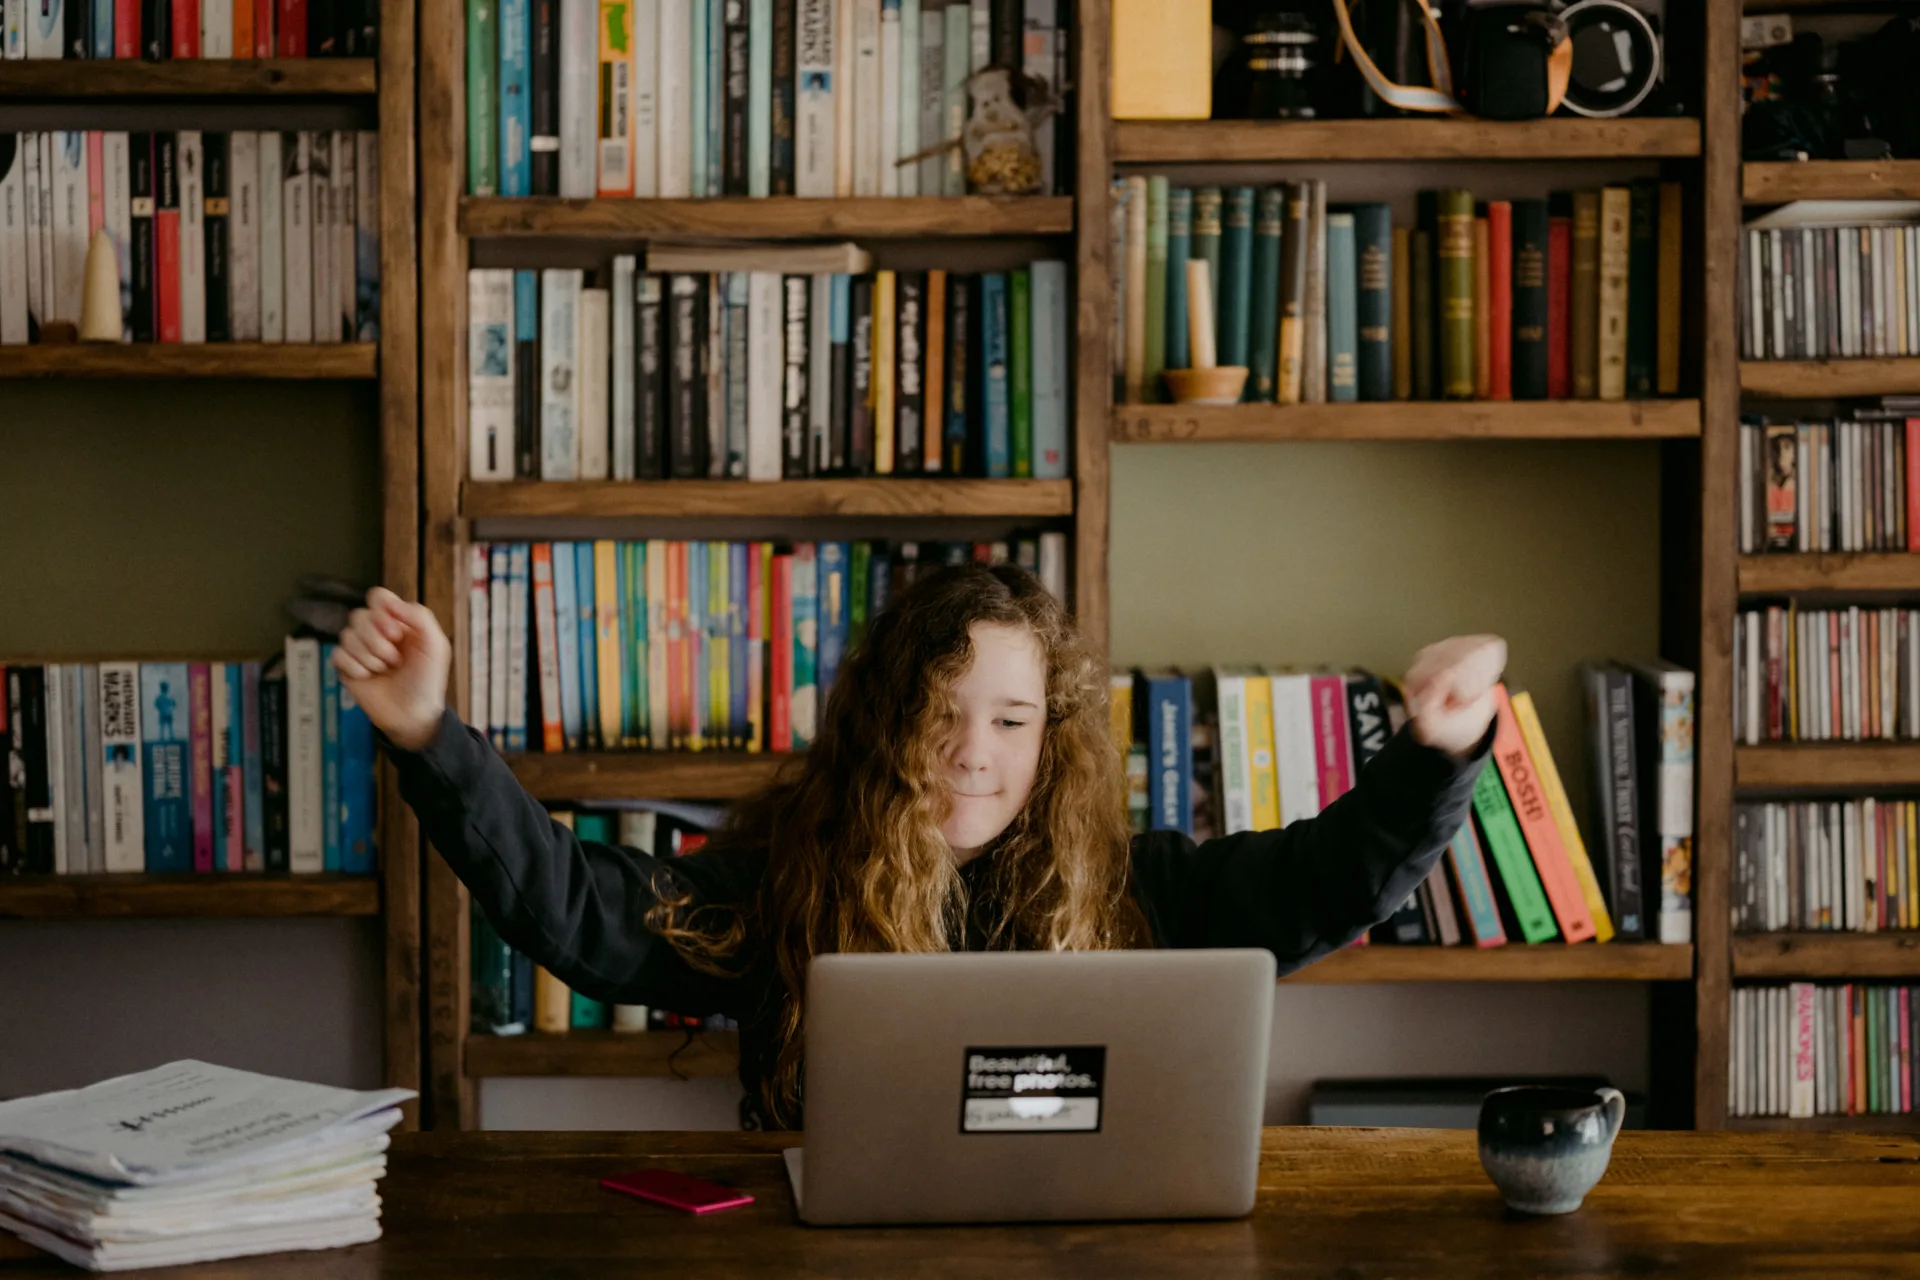 Ein Mädchen mit lockigem Haar streckt triumphierend die Arme am Schreibtisch vor einem Laptop aus, umgeben von Bücherregalen, da sie stolz auf ihren hervorragenden Lernstil ist.